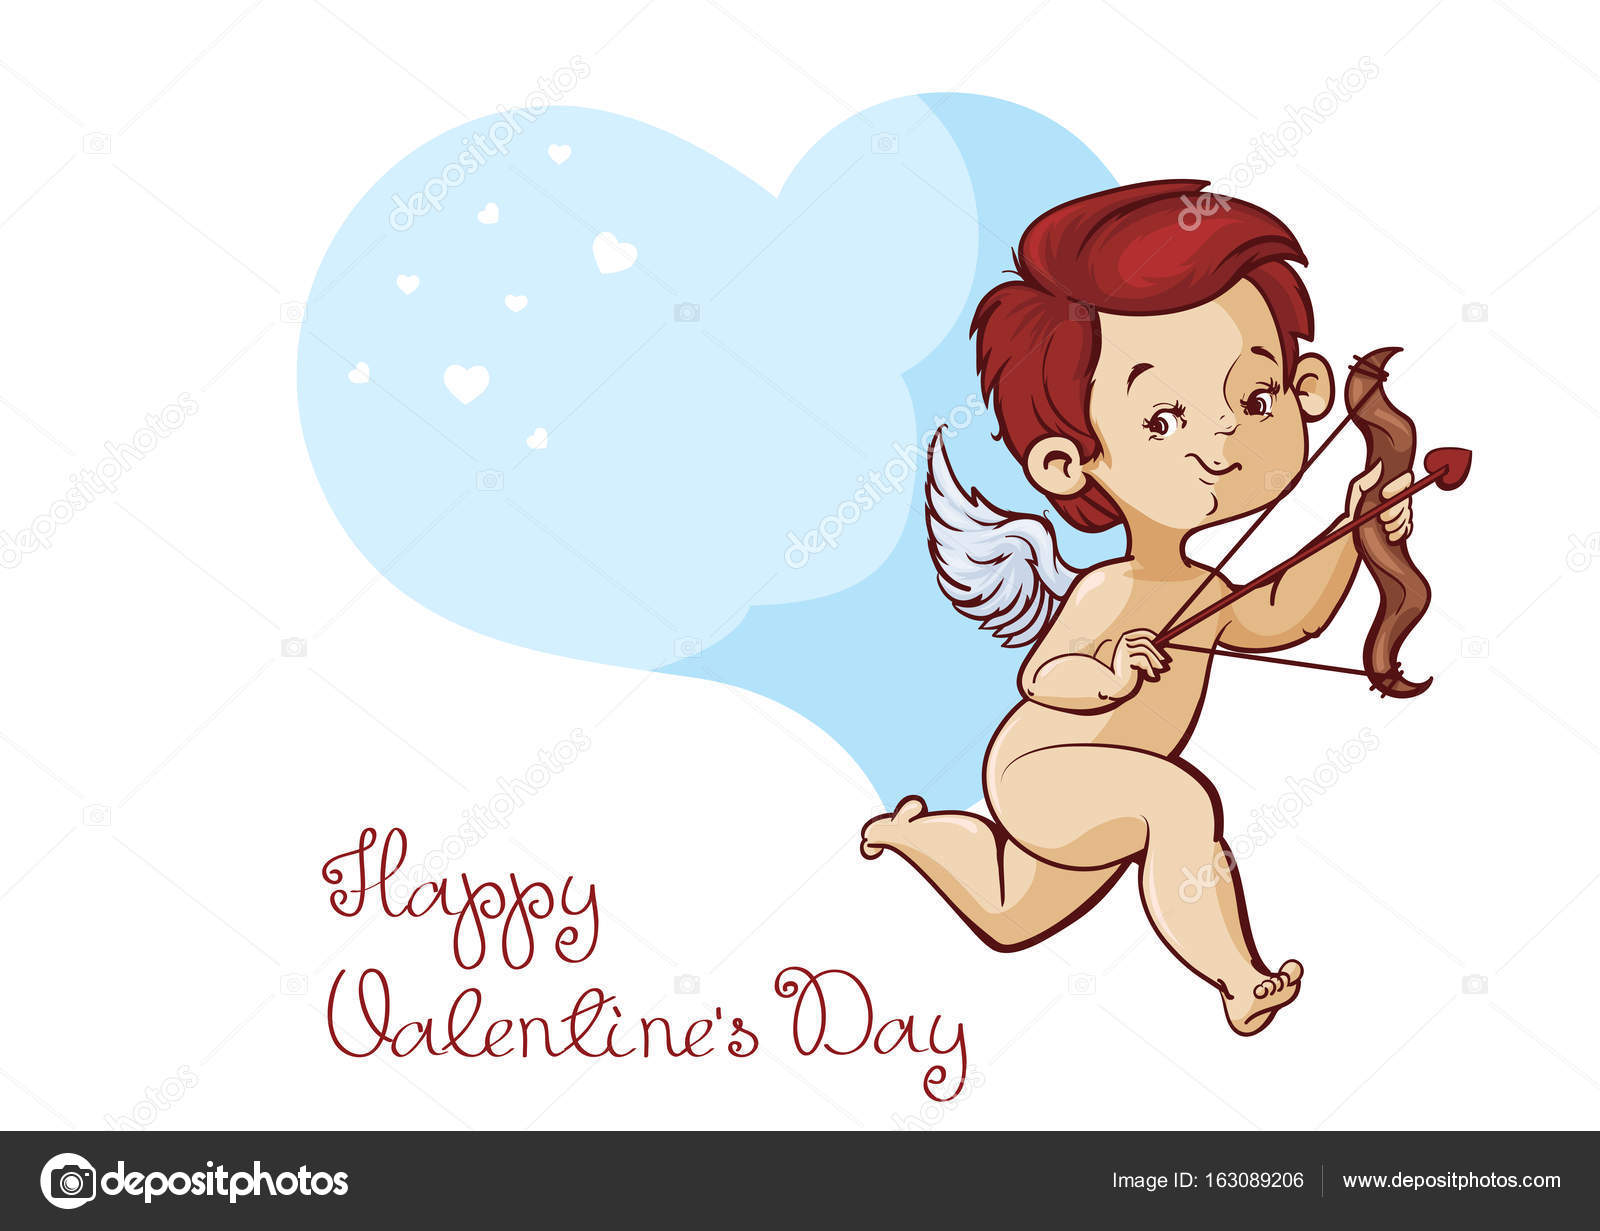 Character design di Cupido con arco e freccia archering cuore di volo Lineart e colorare il disegno Con divertimento d auguri di San Valentino s giorno